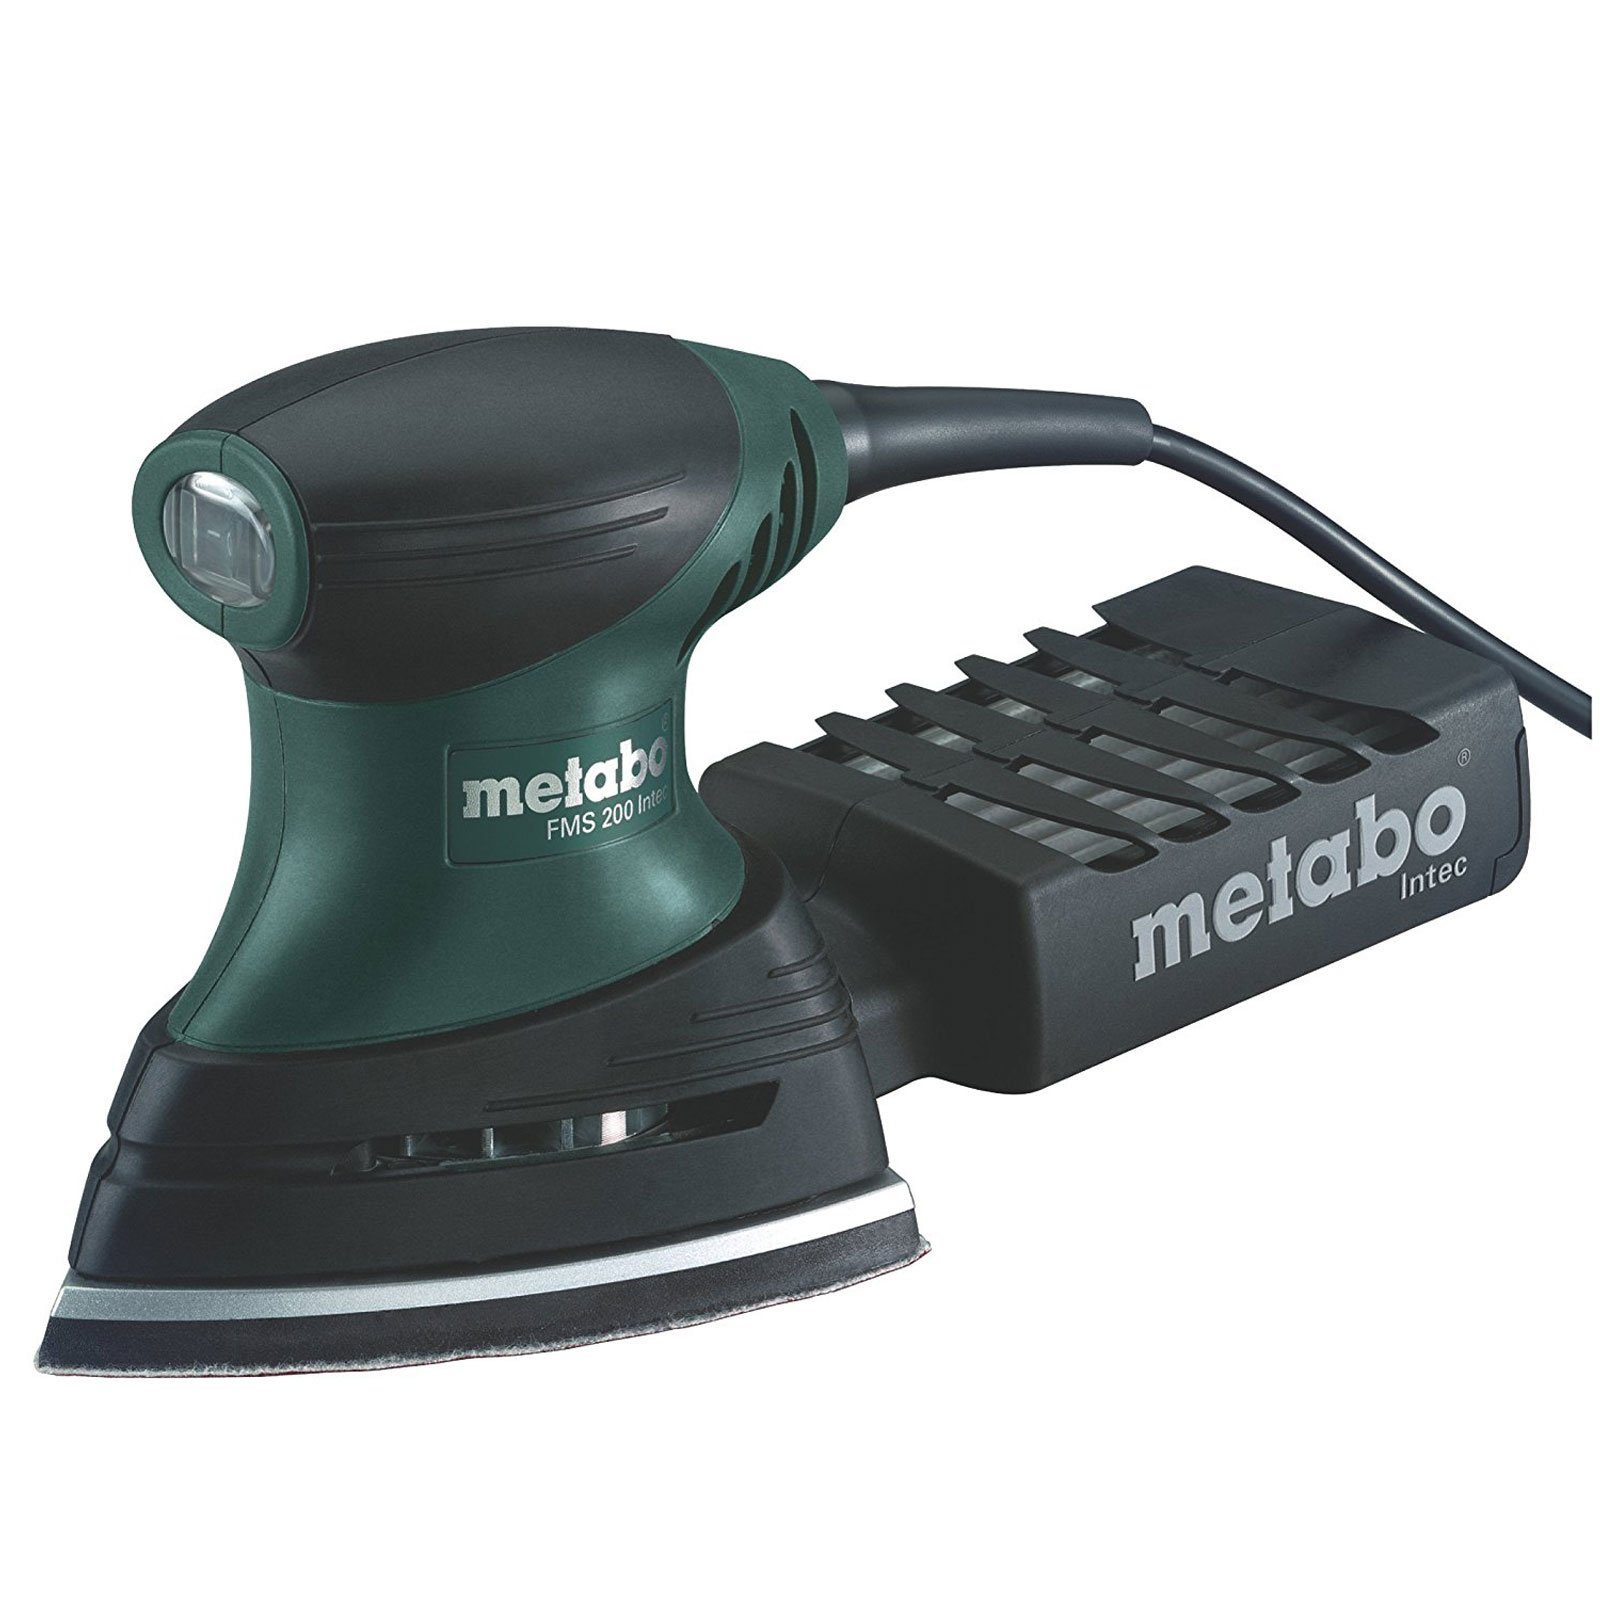 metabo Exzenterschleifer Metabo FMS 200 Intec 600065500 Multischleifer 200 W